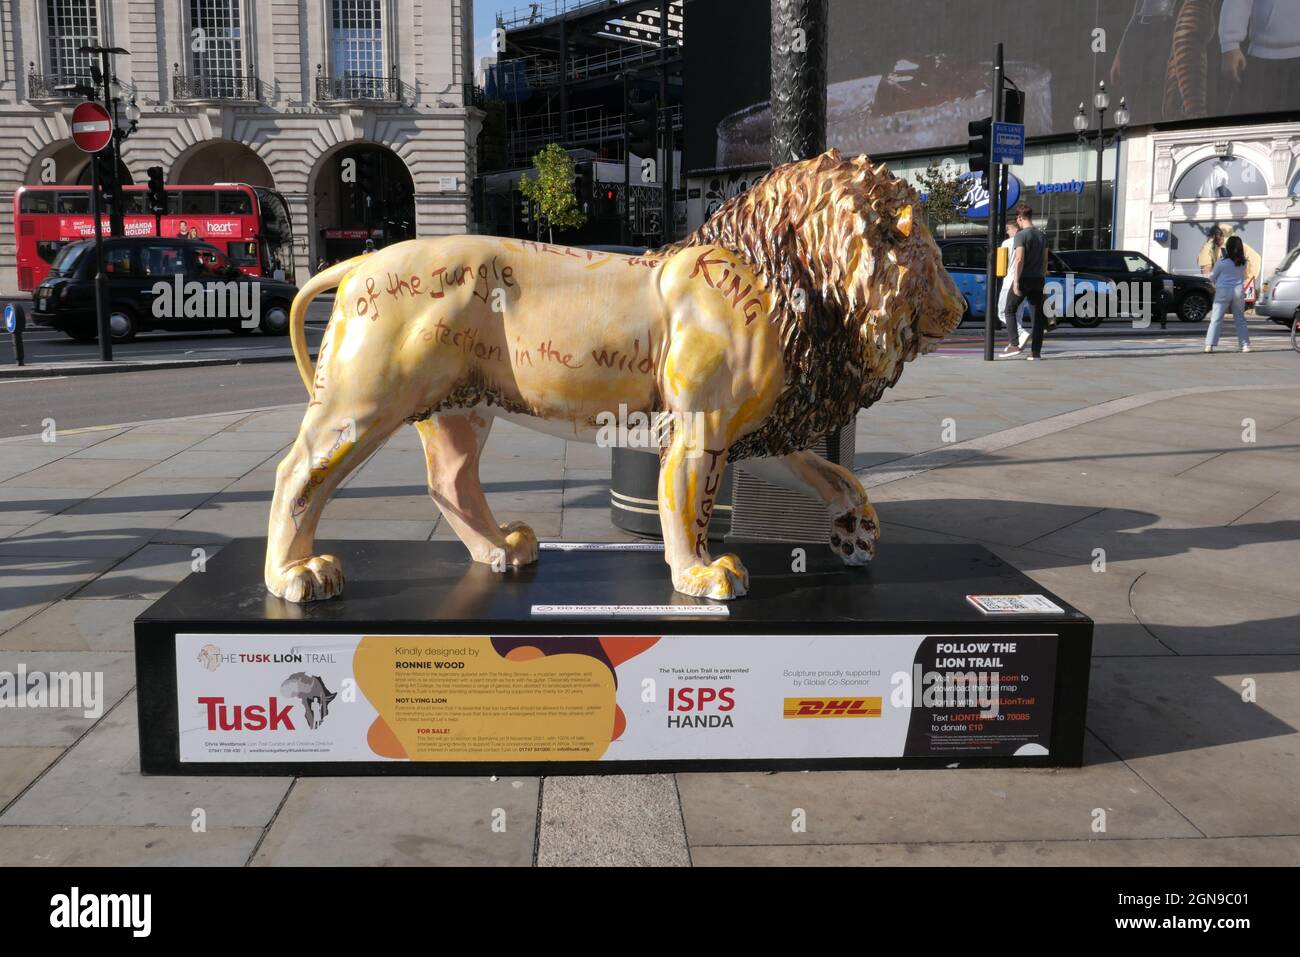 In britischen Städten werden lebensgroße Löwen-Skulpturen ausgestellt, die von Berühmtheiten wie Ronnie Wood und Noel Fielding entworfen wurden. London, Bristol und Edinburgh hutten Skulpturen, um das Bewusstsein für die Bedrohung von Löwen in freier Wildbahn zu schärfen. Der Tusk Lion Trail wurde von der britischen Naturschutzorganisation Tusk eingerichtet, die den Herzog von Cambridge als Schirmherrin hat. 47 Skulpturen wurden in Städten auf der ganzen Welt auf den Straßen aufgestellt. Zu den weiteren Prominenten, die an der Entstehung der Stücke beteiligt waren, gehören die britischen Schauspieler John Cleese und Mathew Horne sowie der Bassist von Dire Straits John Illsley. Stockfoto